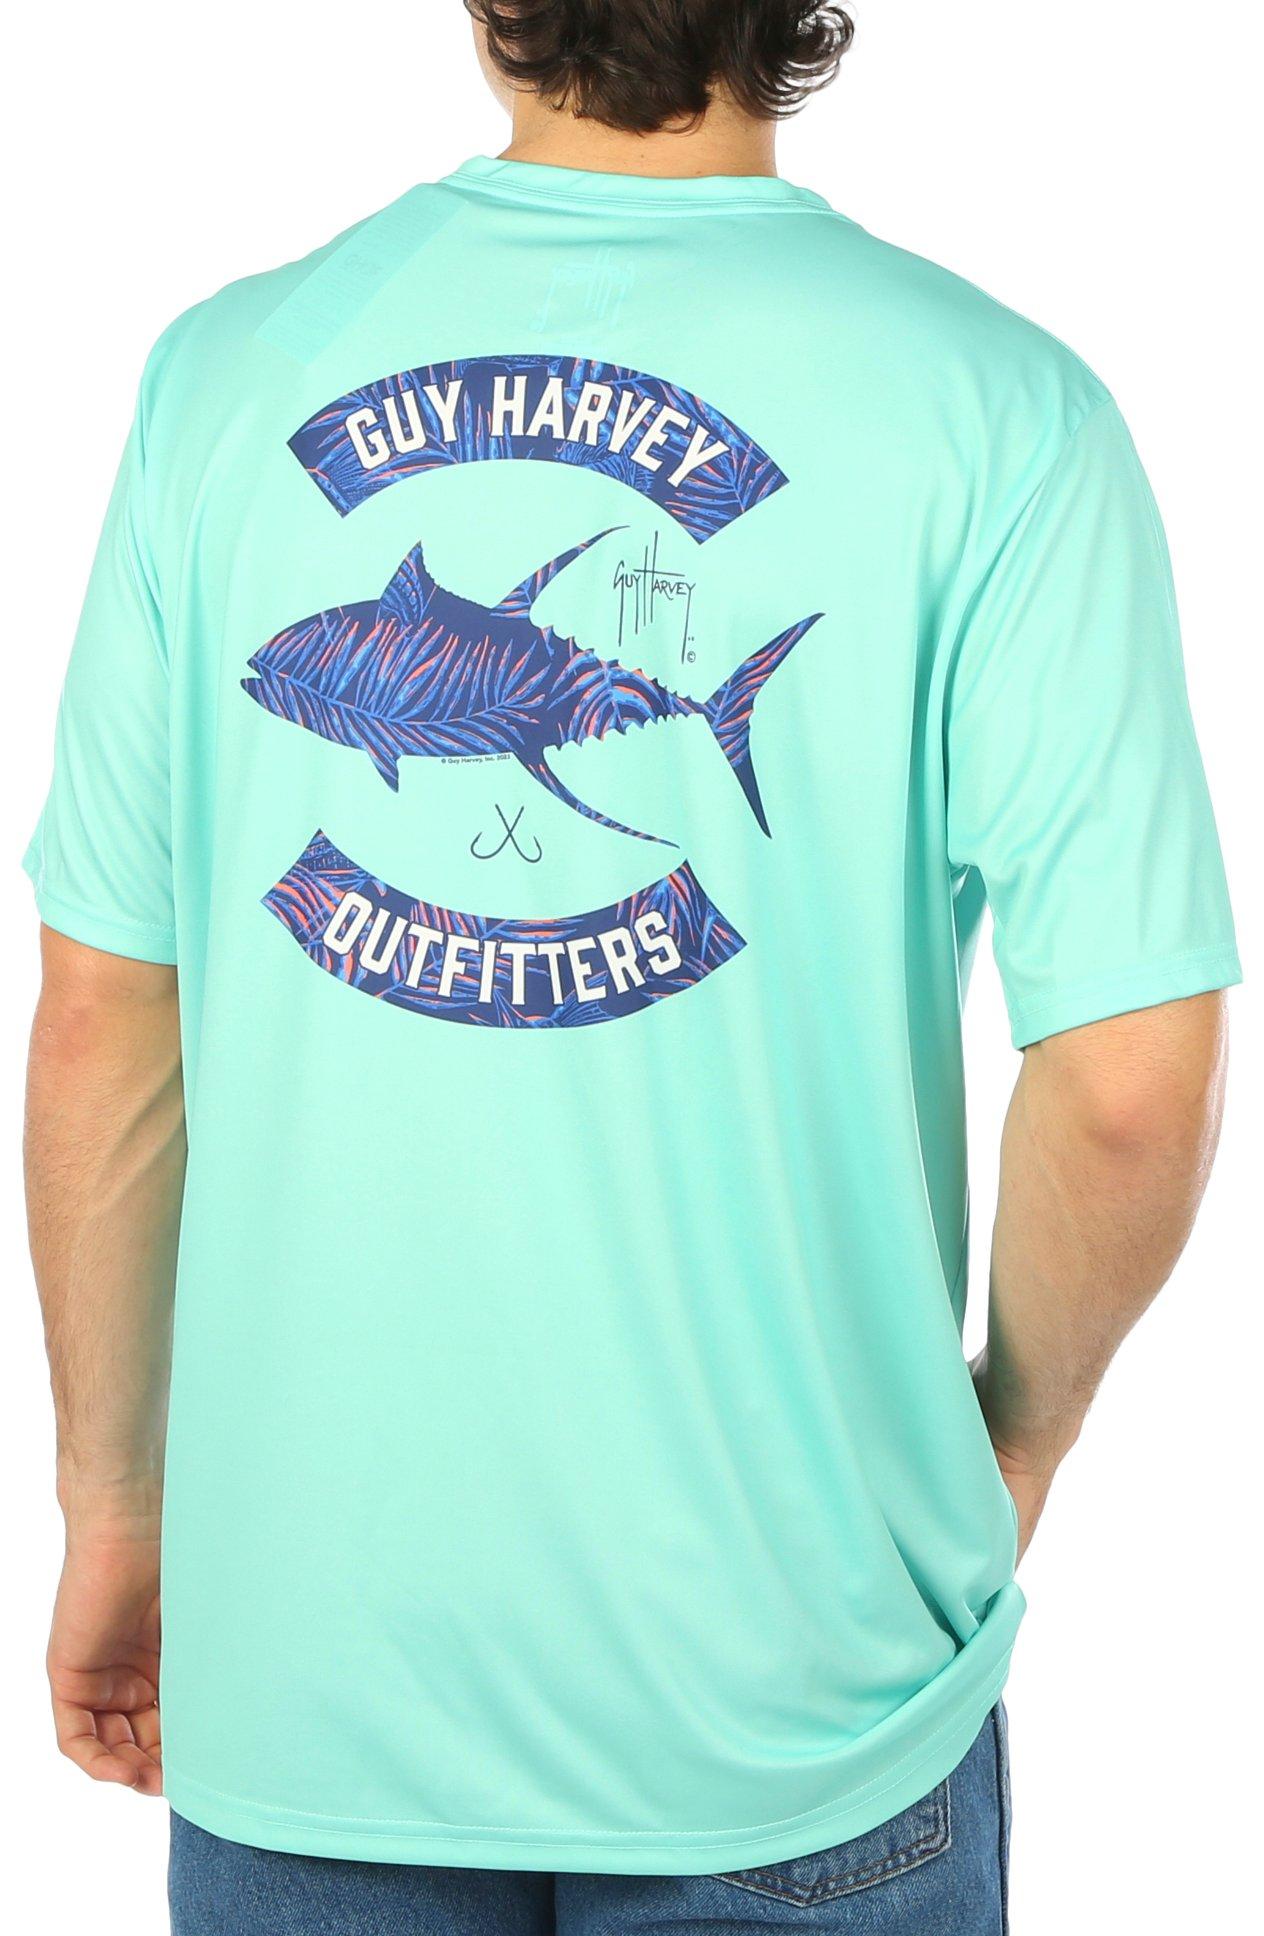 Guy Harvey Mens Fish Short Sleeve T-Shirt